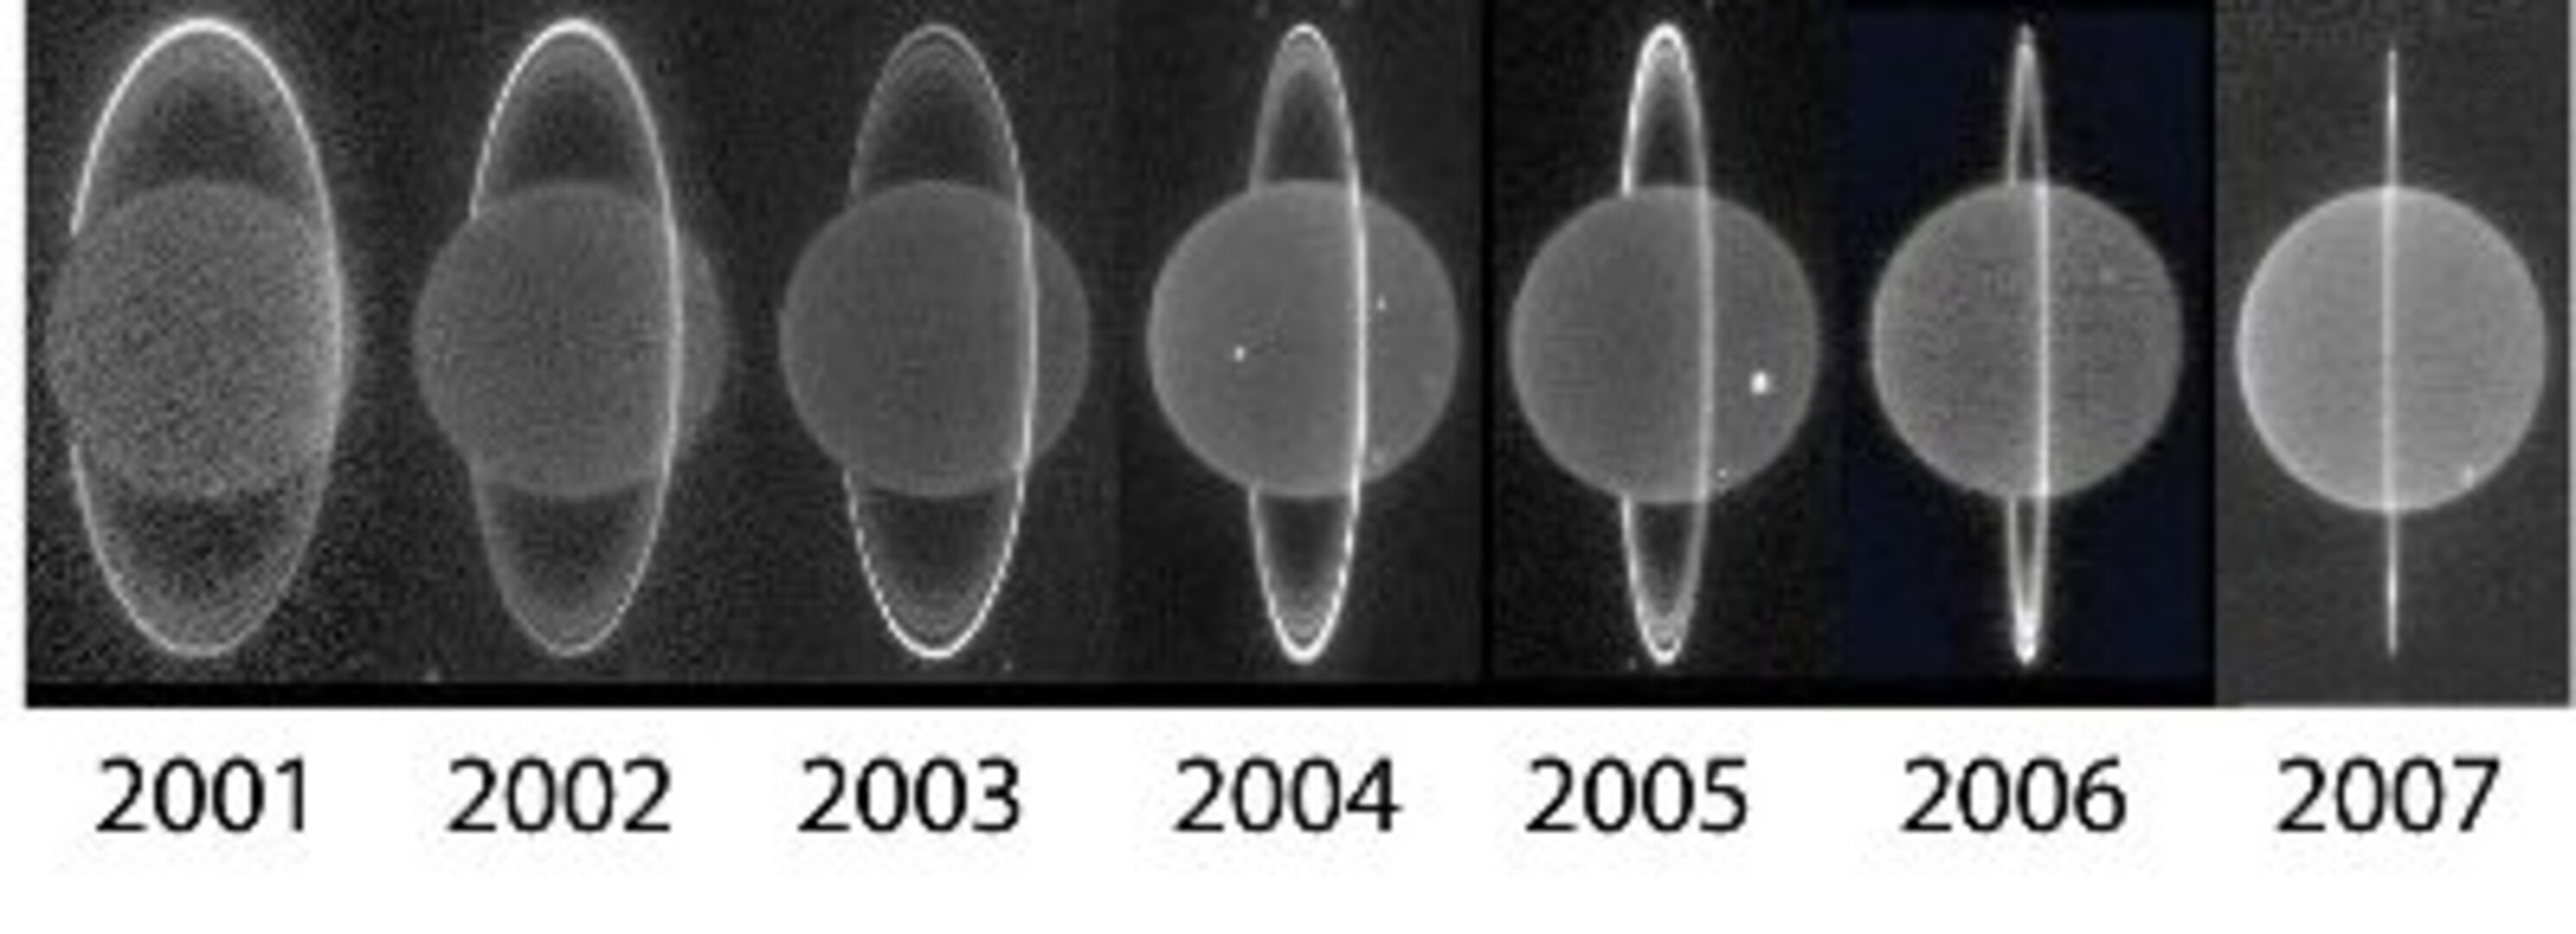 Uranus on infrared images